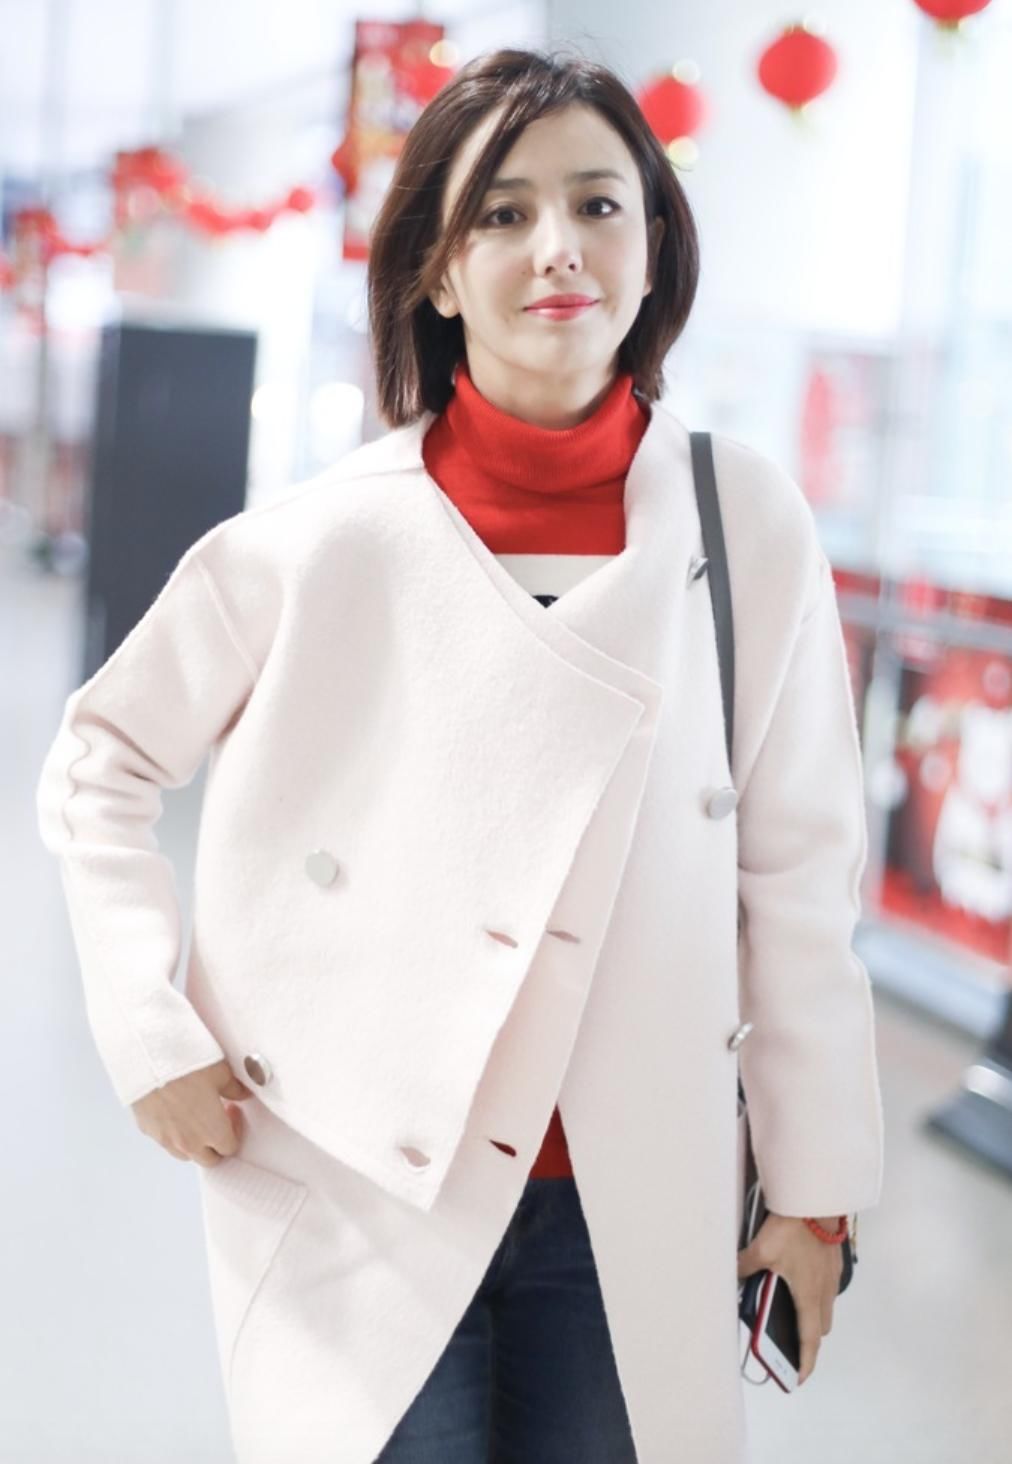 佟丽娅现身机场 一袭白色风衣内搭红色毛衣 帅